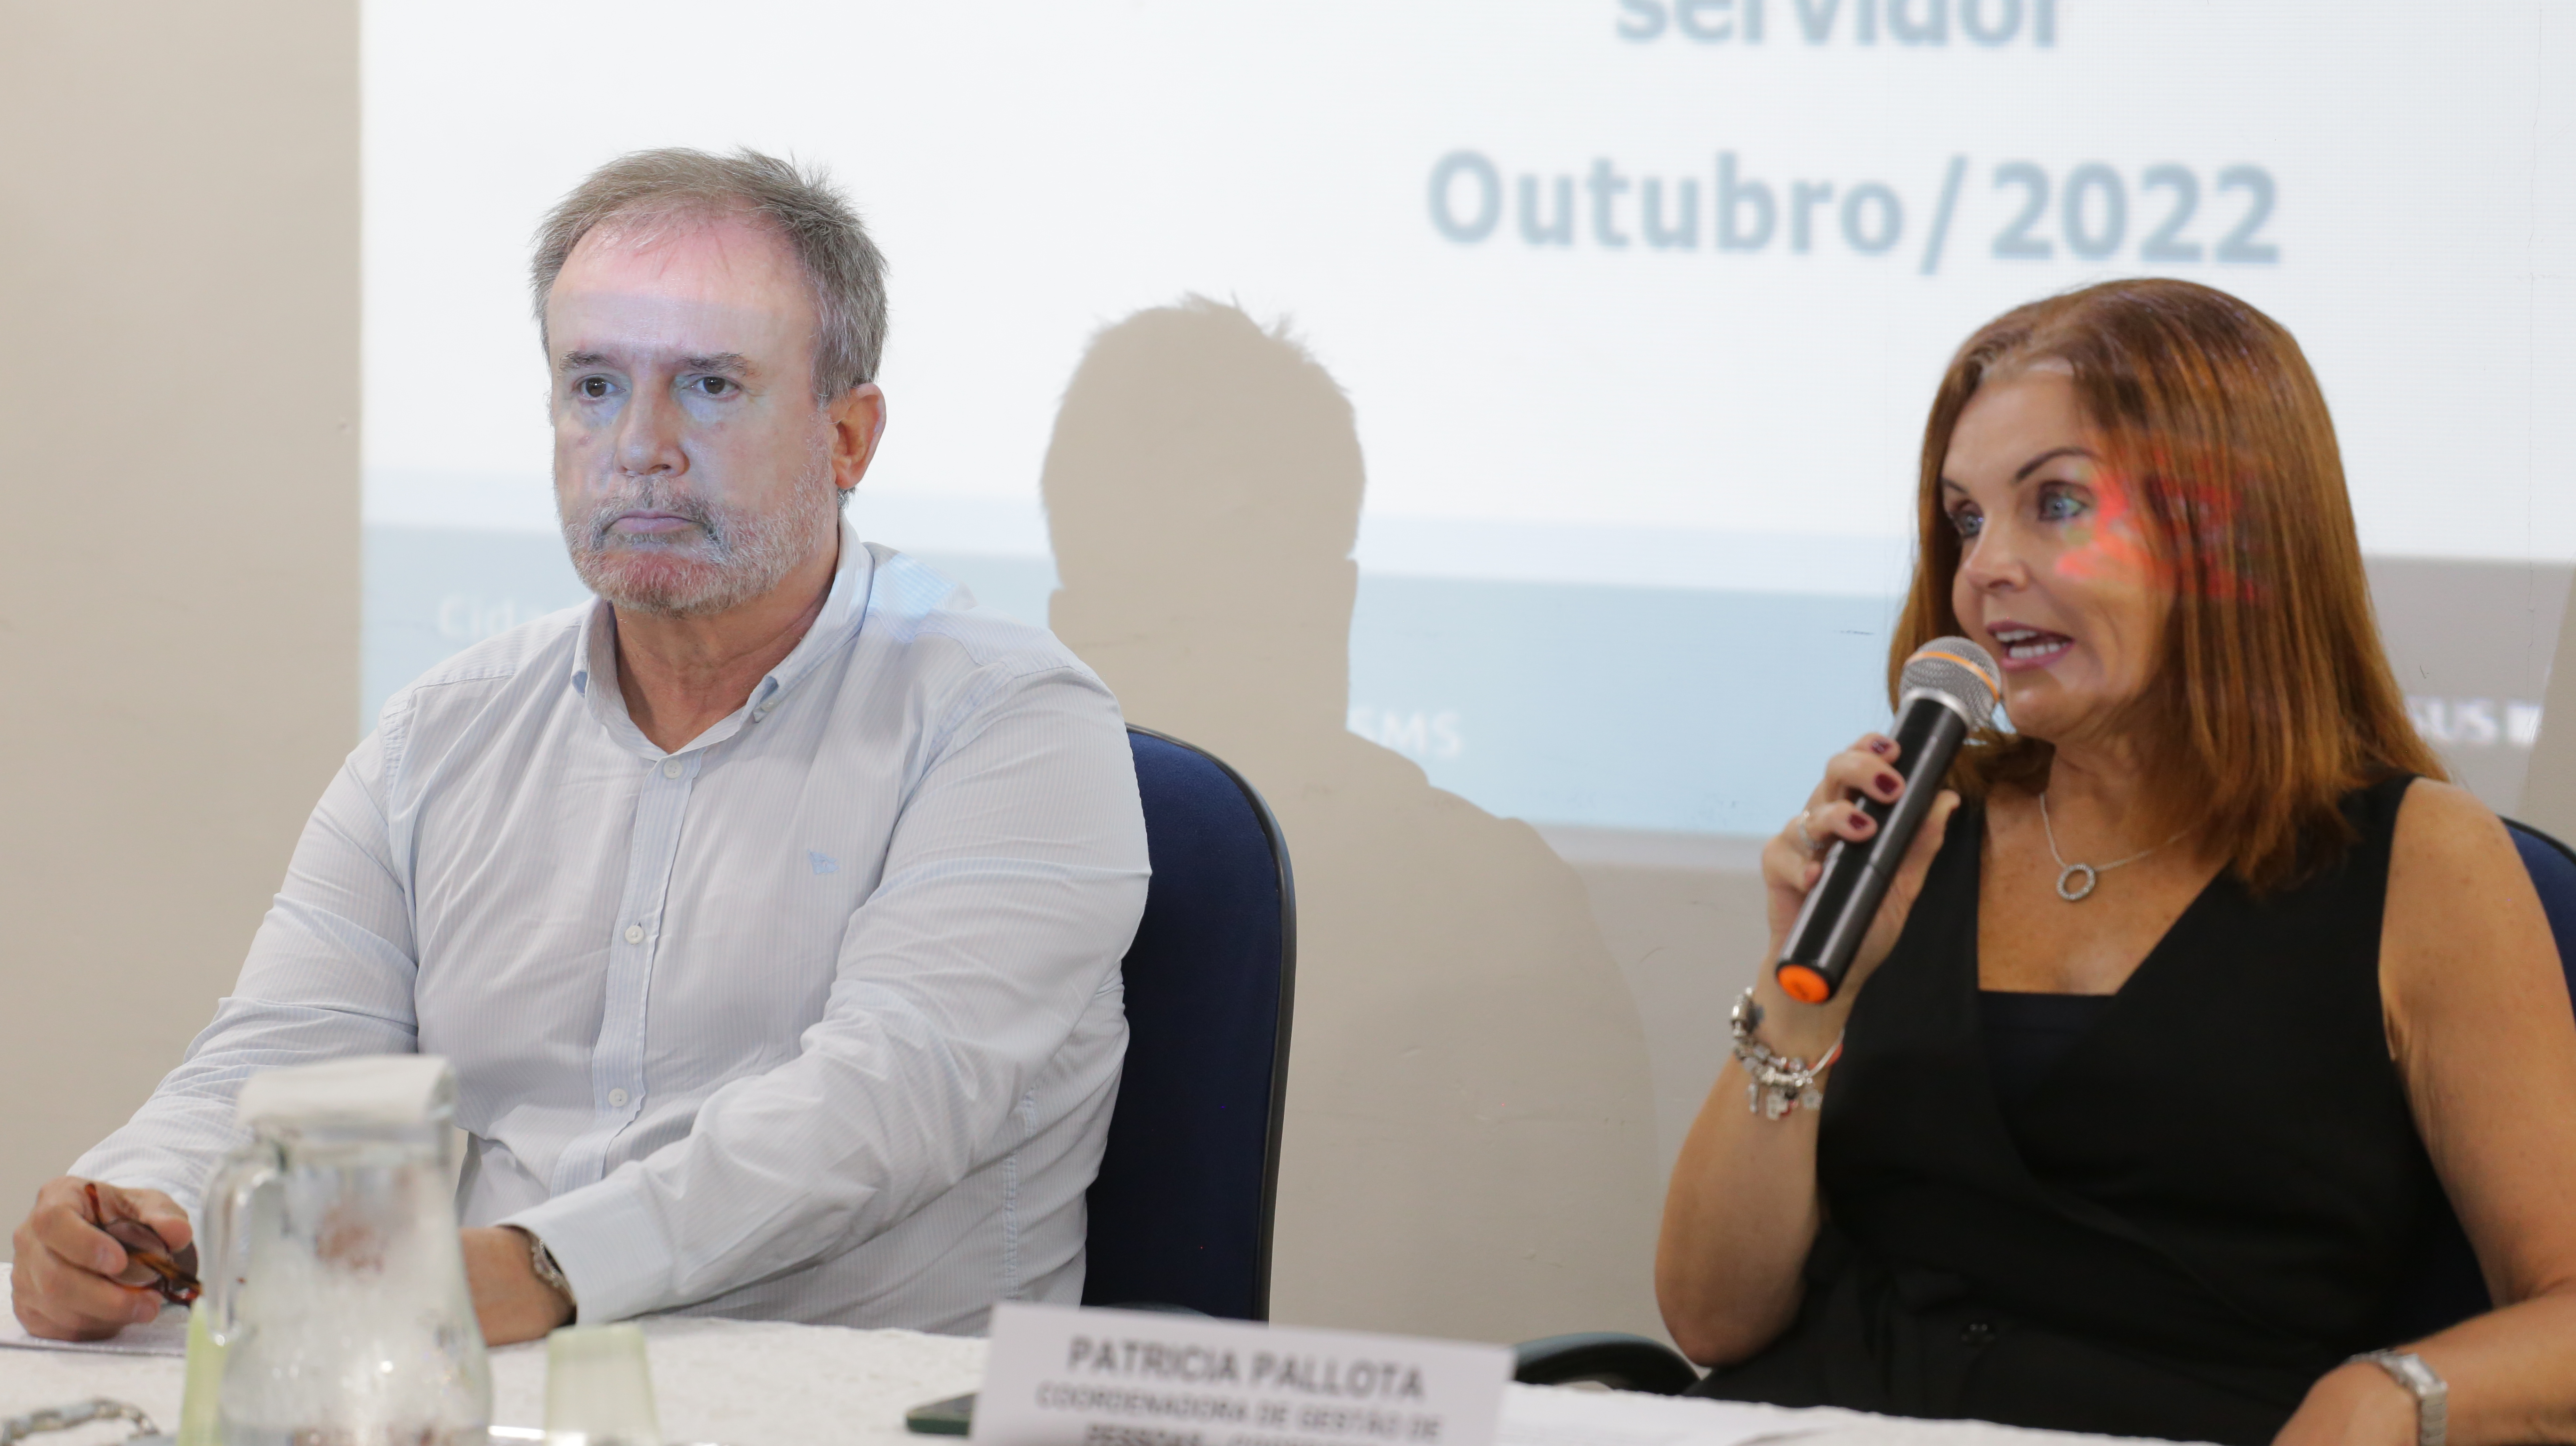 Na imagem estão sentados o secretário da Secretaria Municipal da Saúde, Doutor Luiz Carlos Zamarco, e, do  seu lado direito, a coordenadora de gestão de pessoas, Patrícia Pallota, que está falando ao microfone